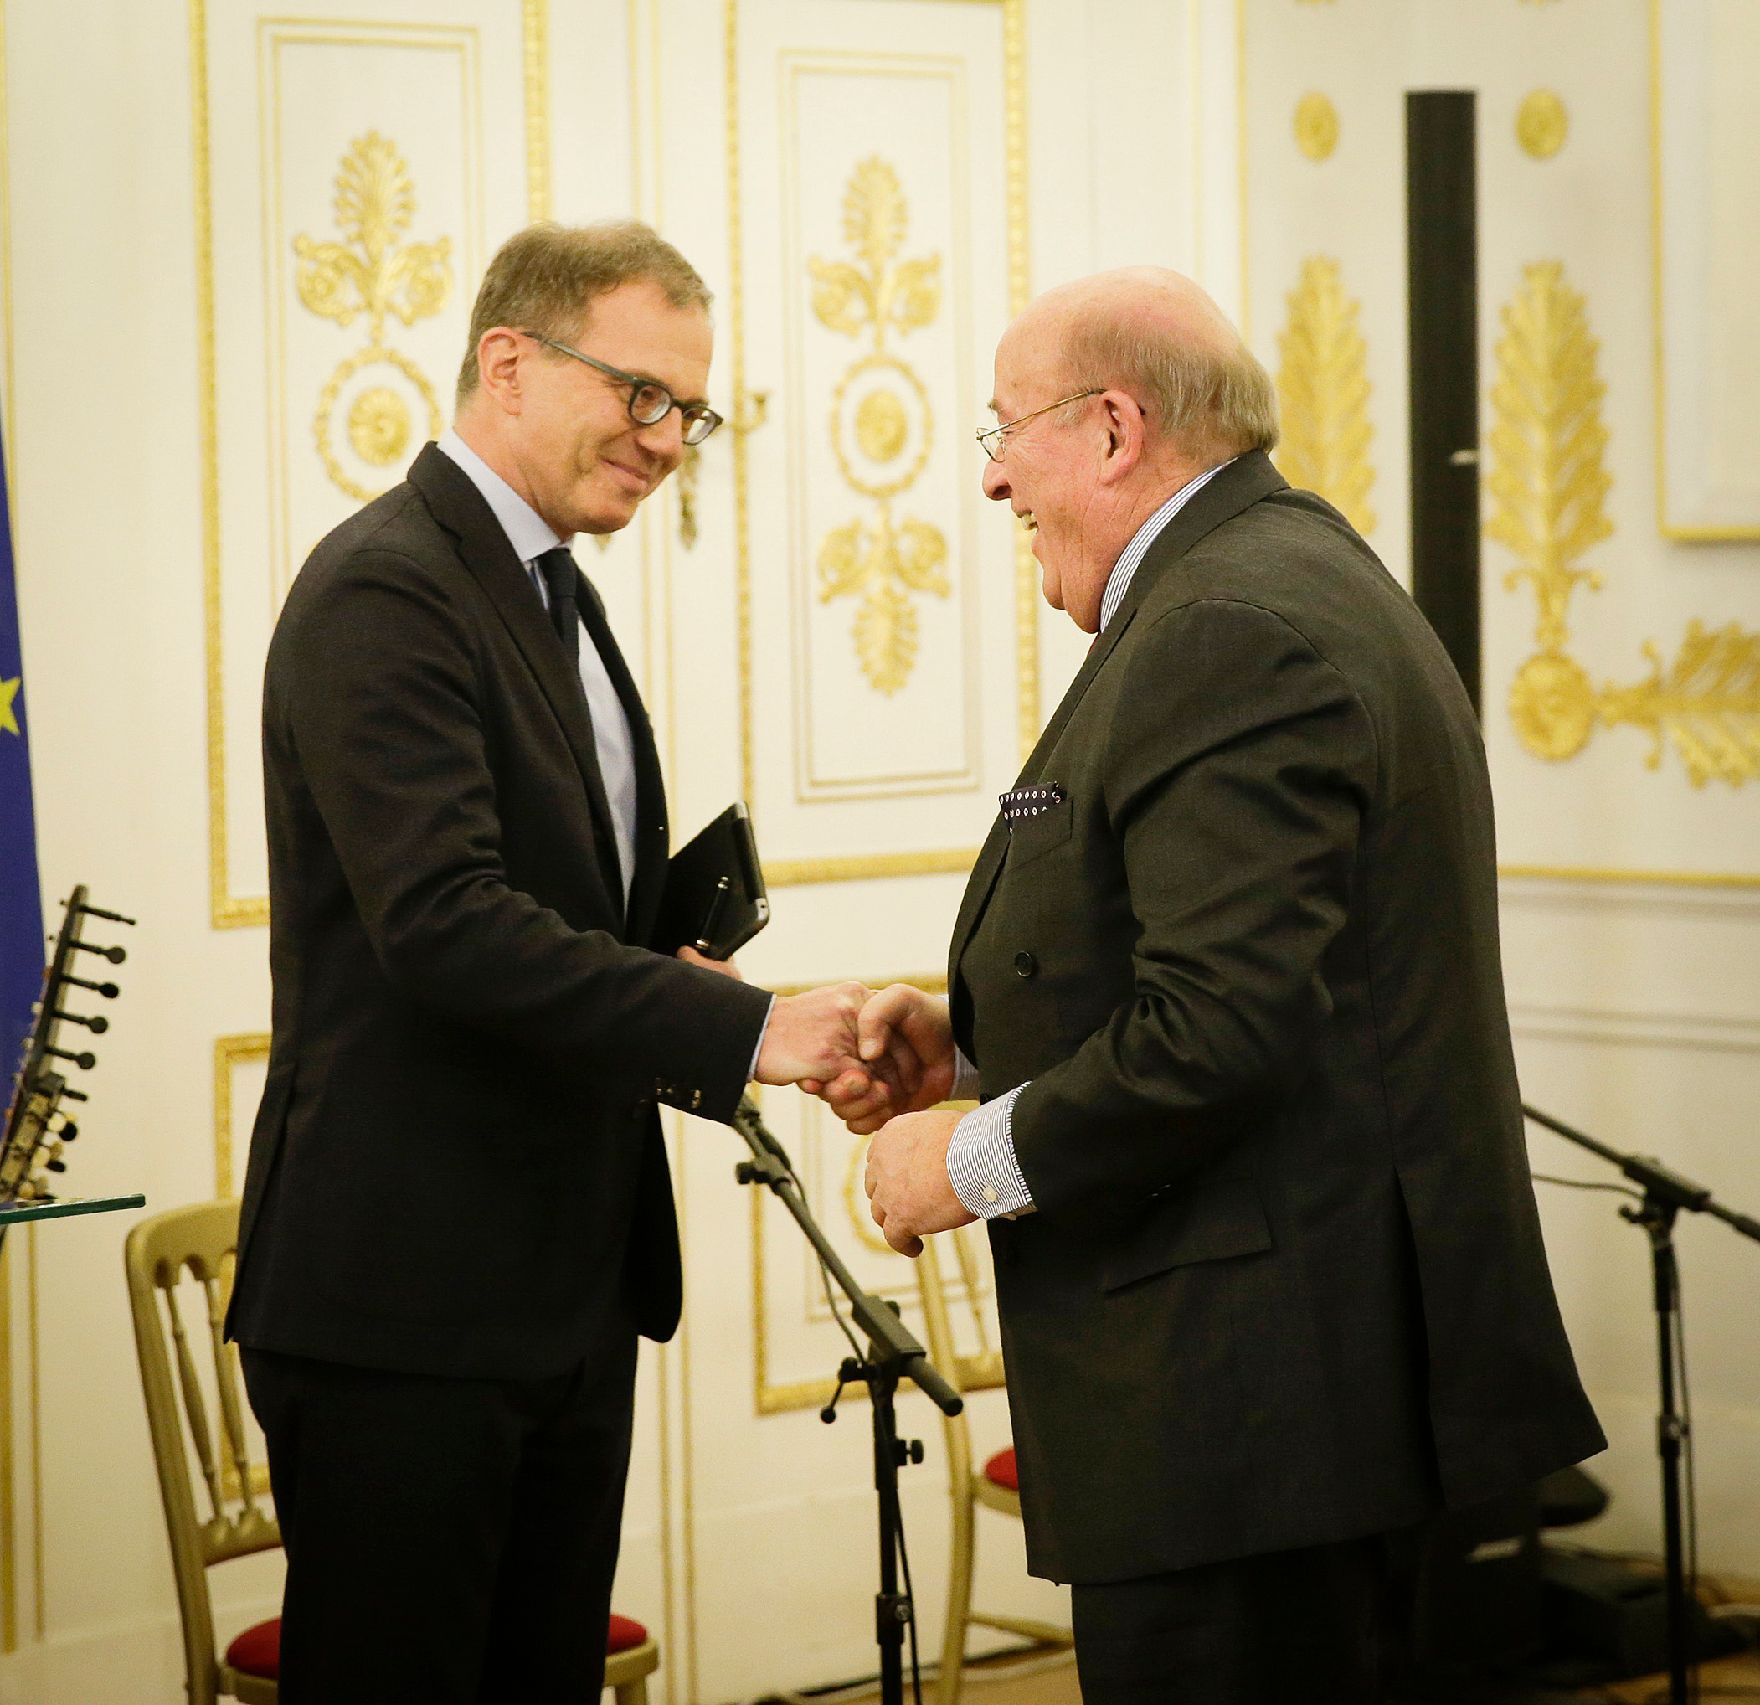 Am 13. Jänner 2016 überreichte Kunst- und Kulturminister Josef Ostermayer die Urkunde, mit der Johannes Fischer (r.) der Berufstitel Professor verliehen wurde. Im Bild mit dem Laudator Armin Wolf (l.).